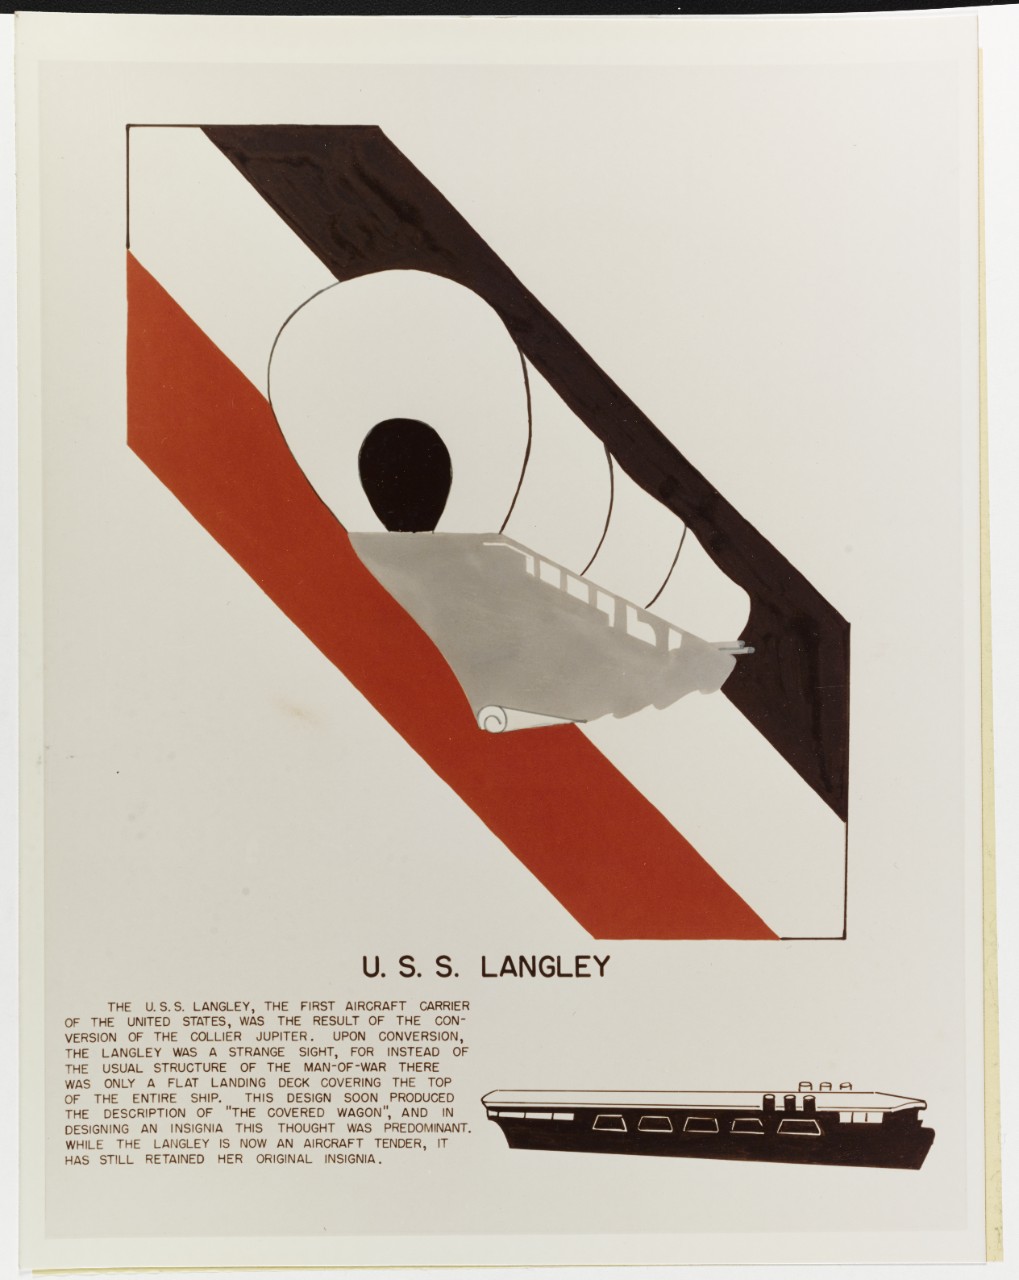 Insignia: USS LANGLEY (CV-1)